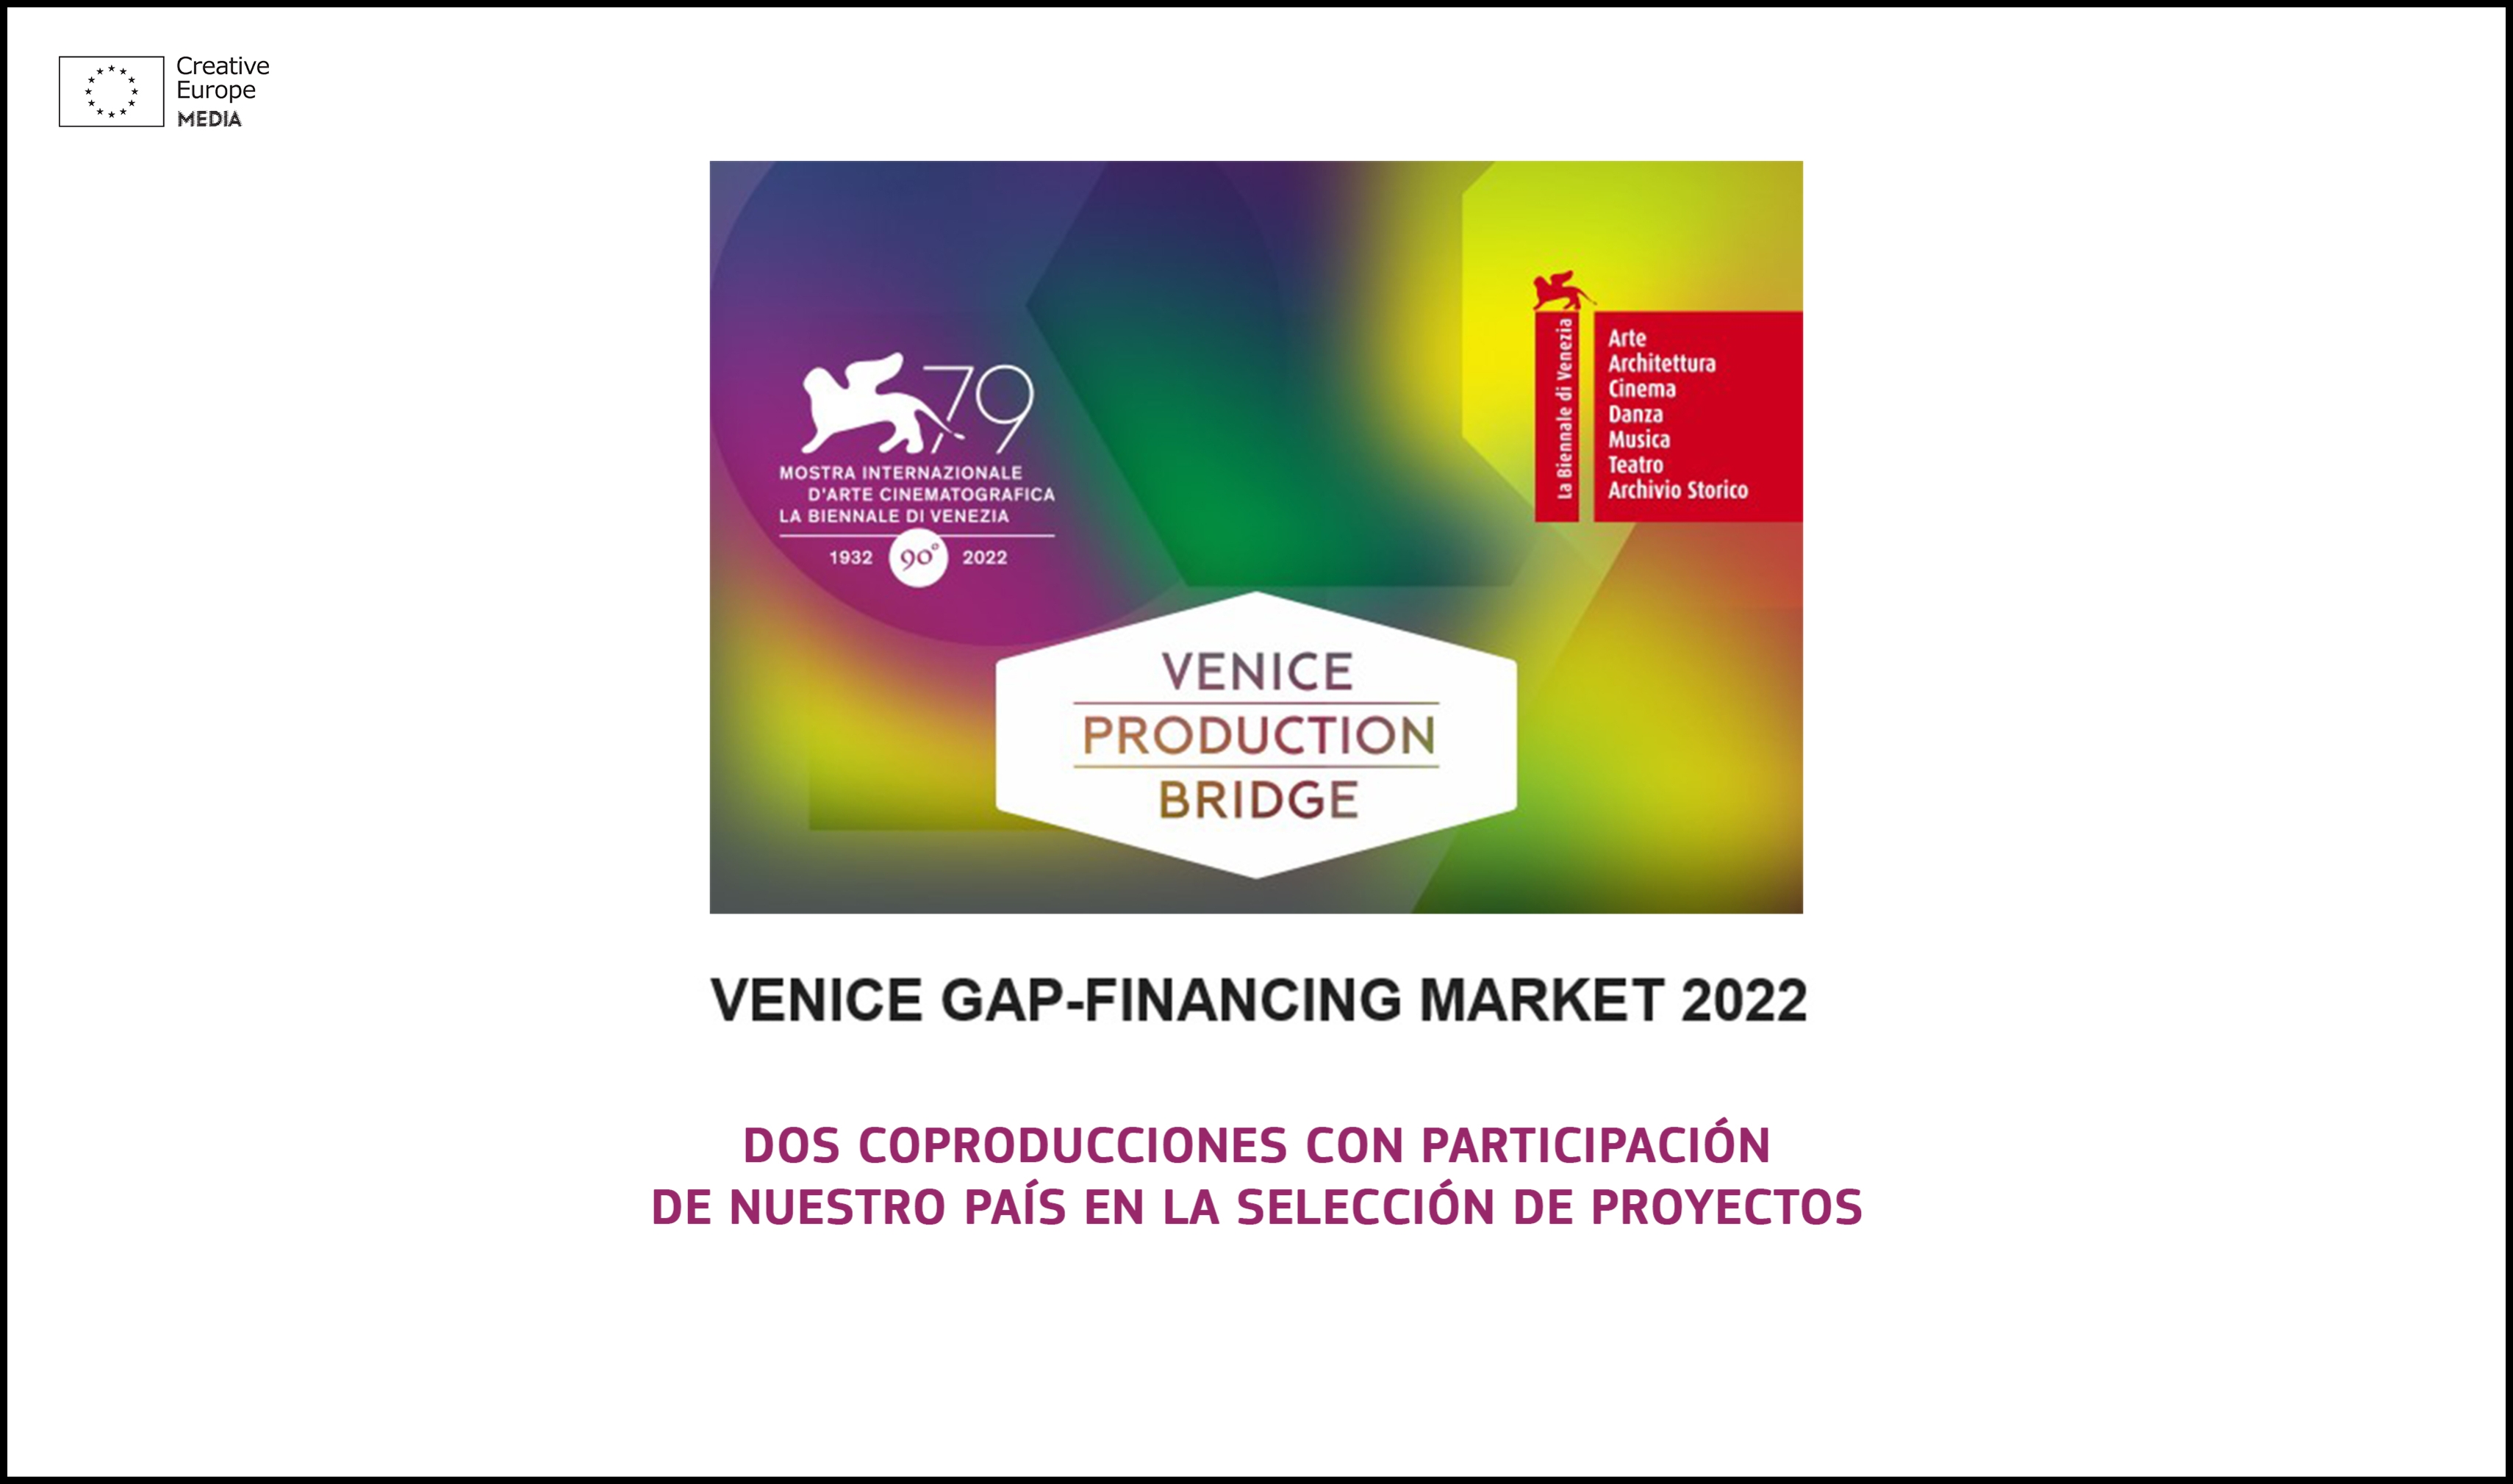 VENICE GAP-FINANCING MARKET 2022: Dos coproducciones con participación española en su selección de proyectos